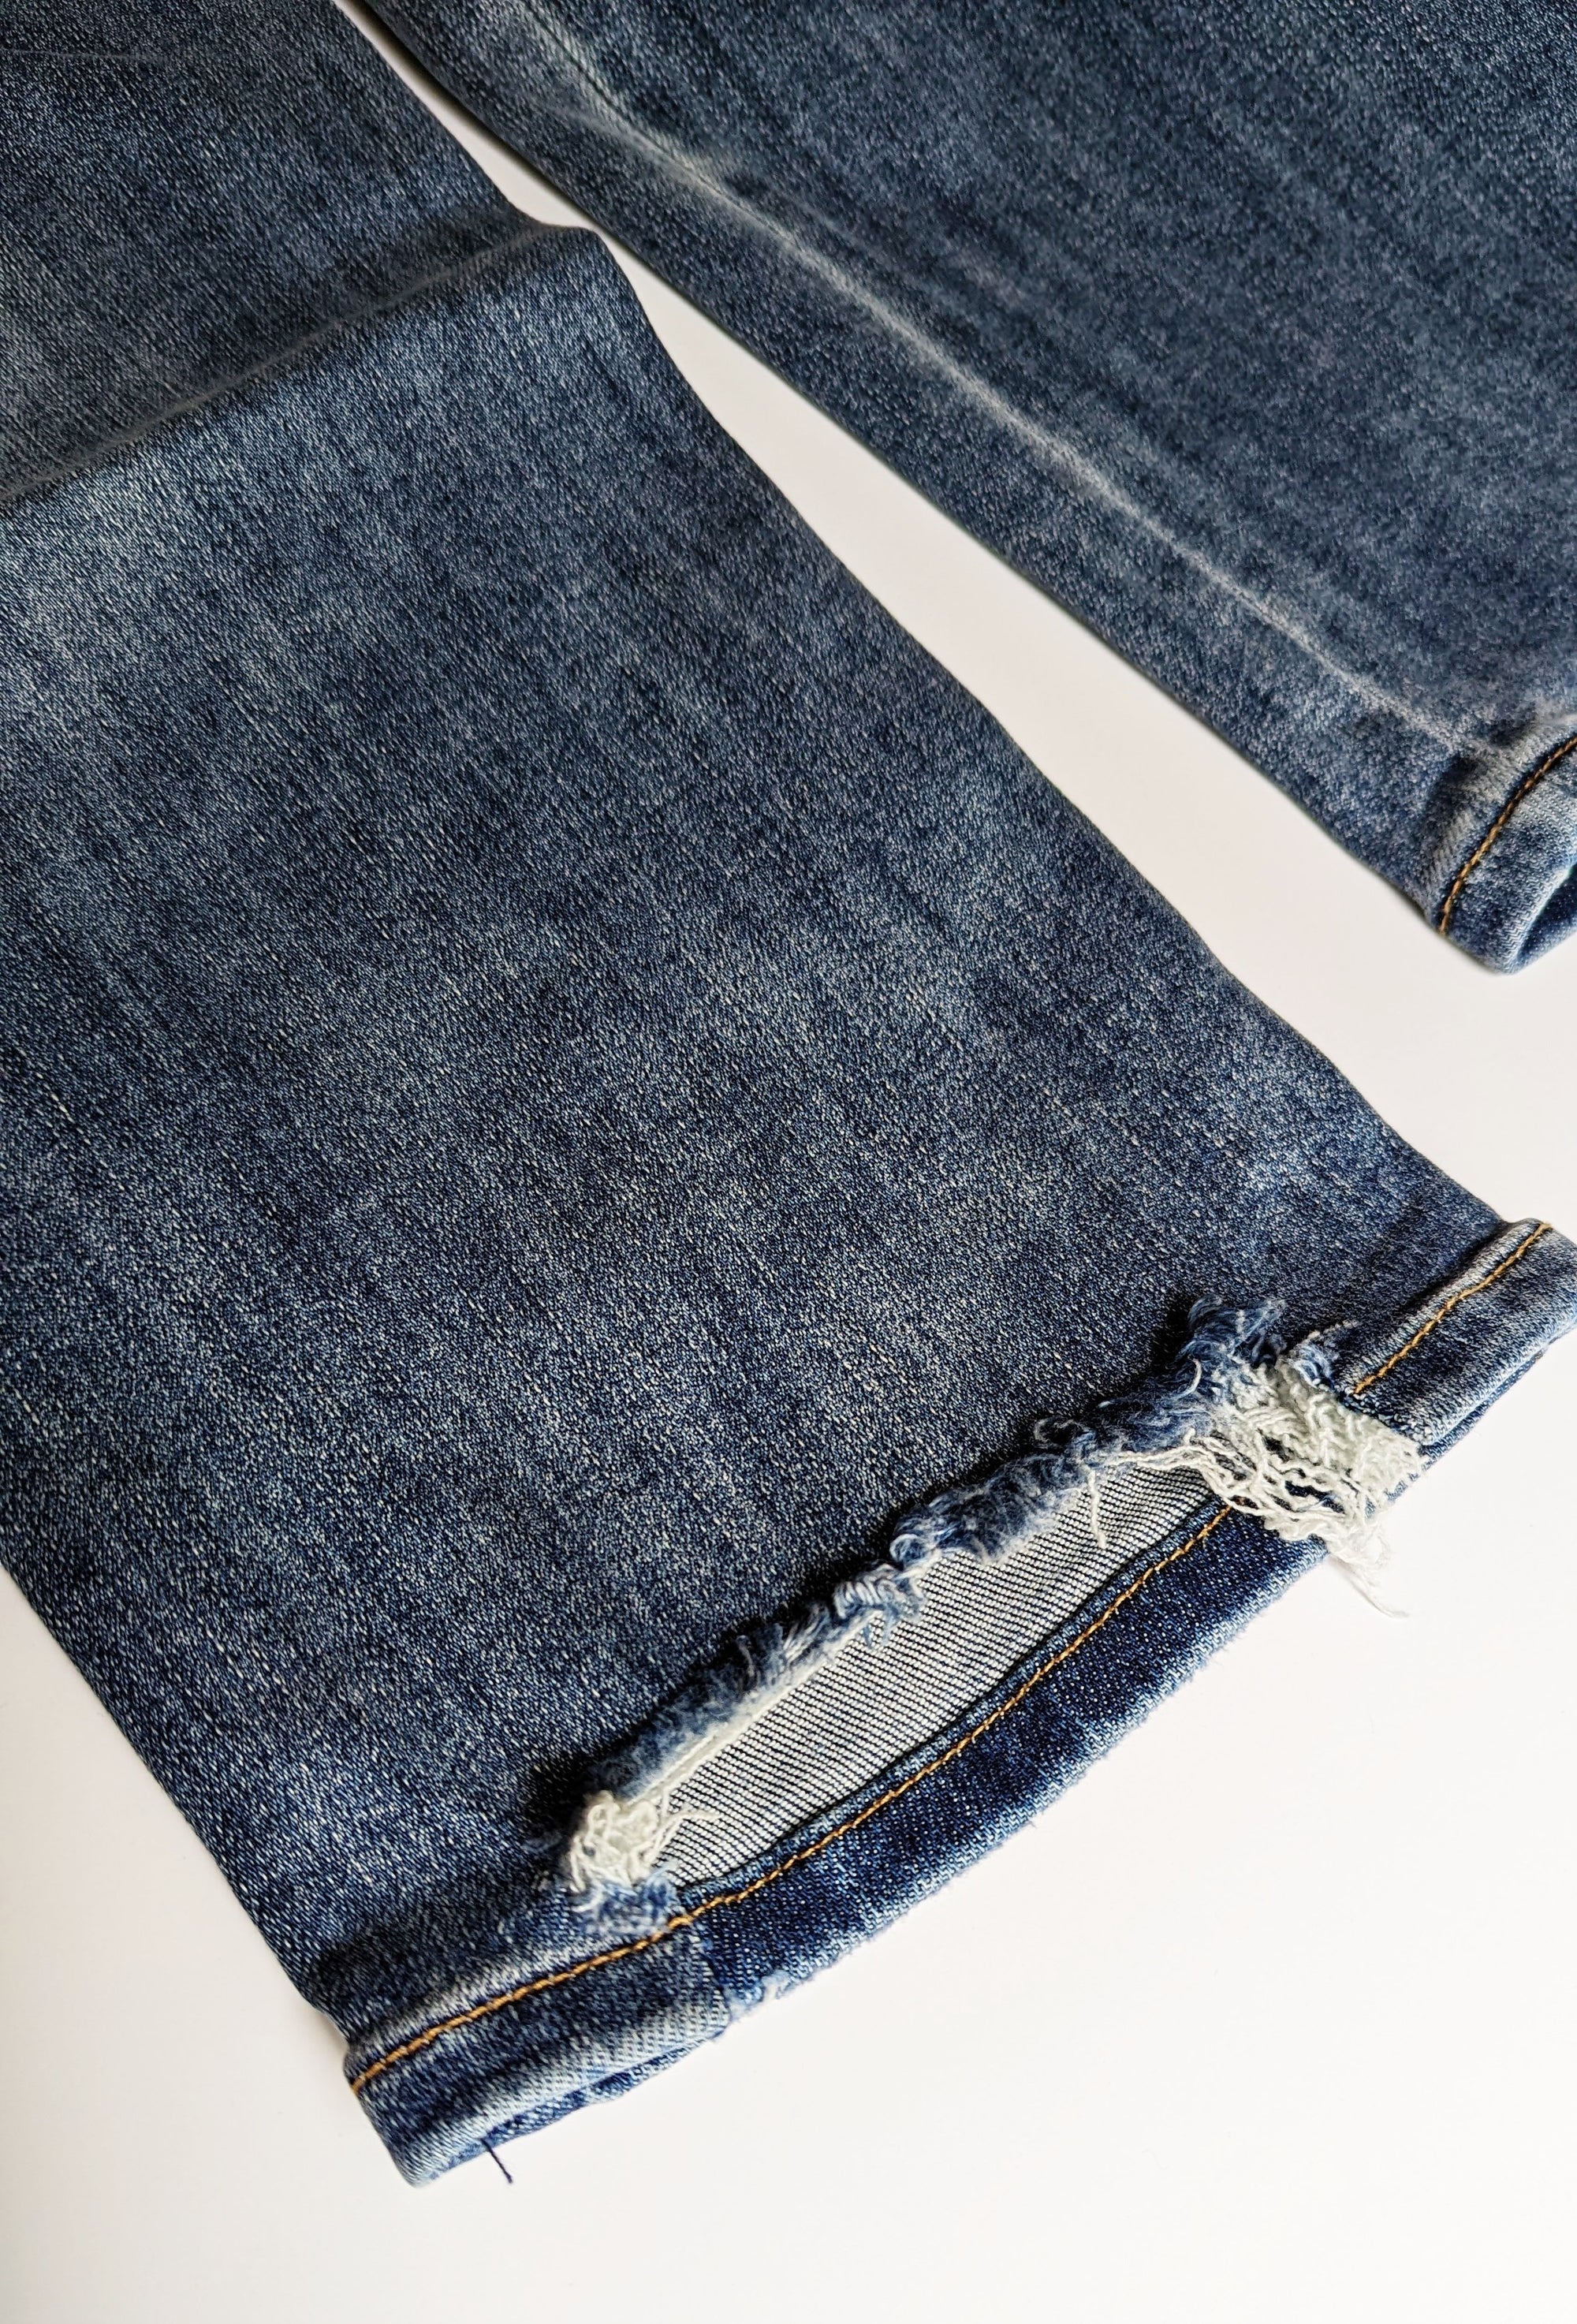 Risen Vintage Washed Straight Leg Jeans in Medium, Dark &amp; Black Wash